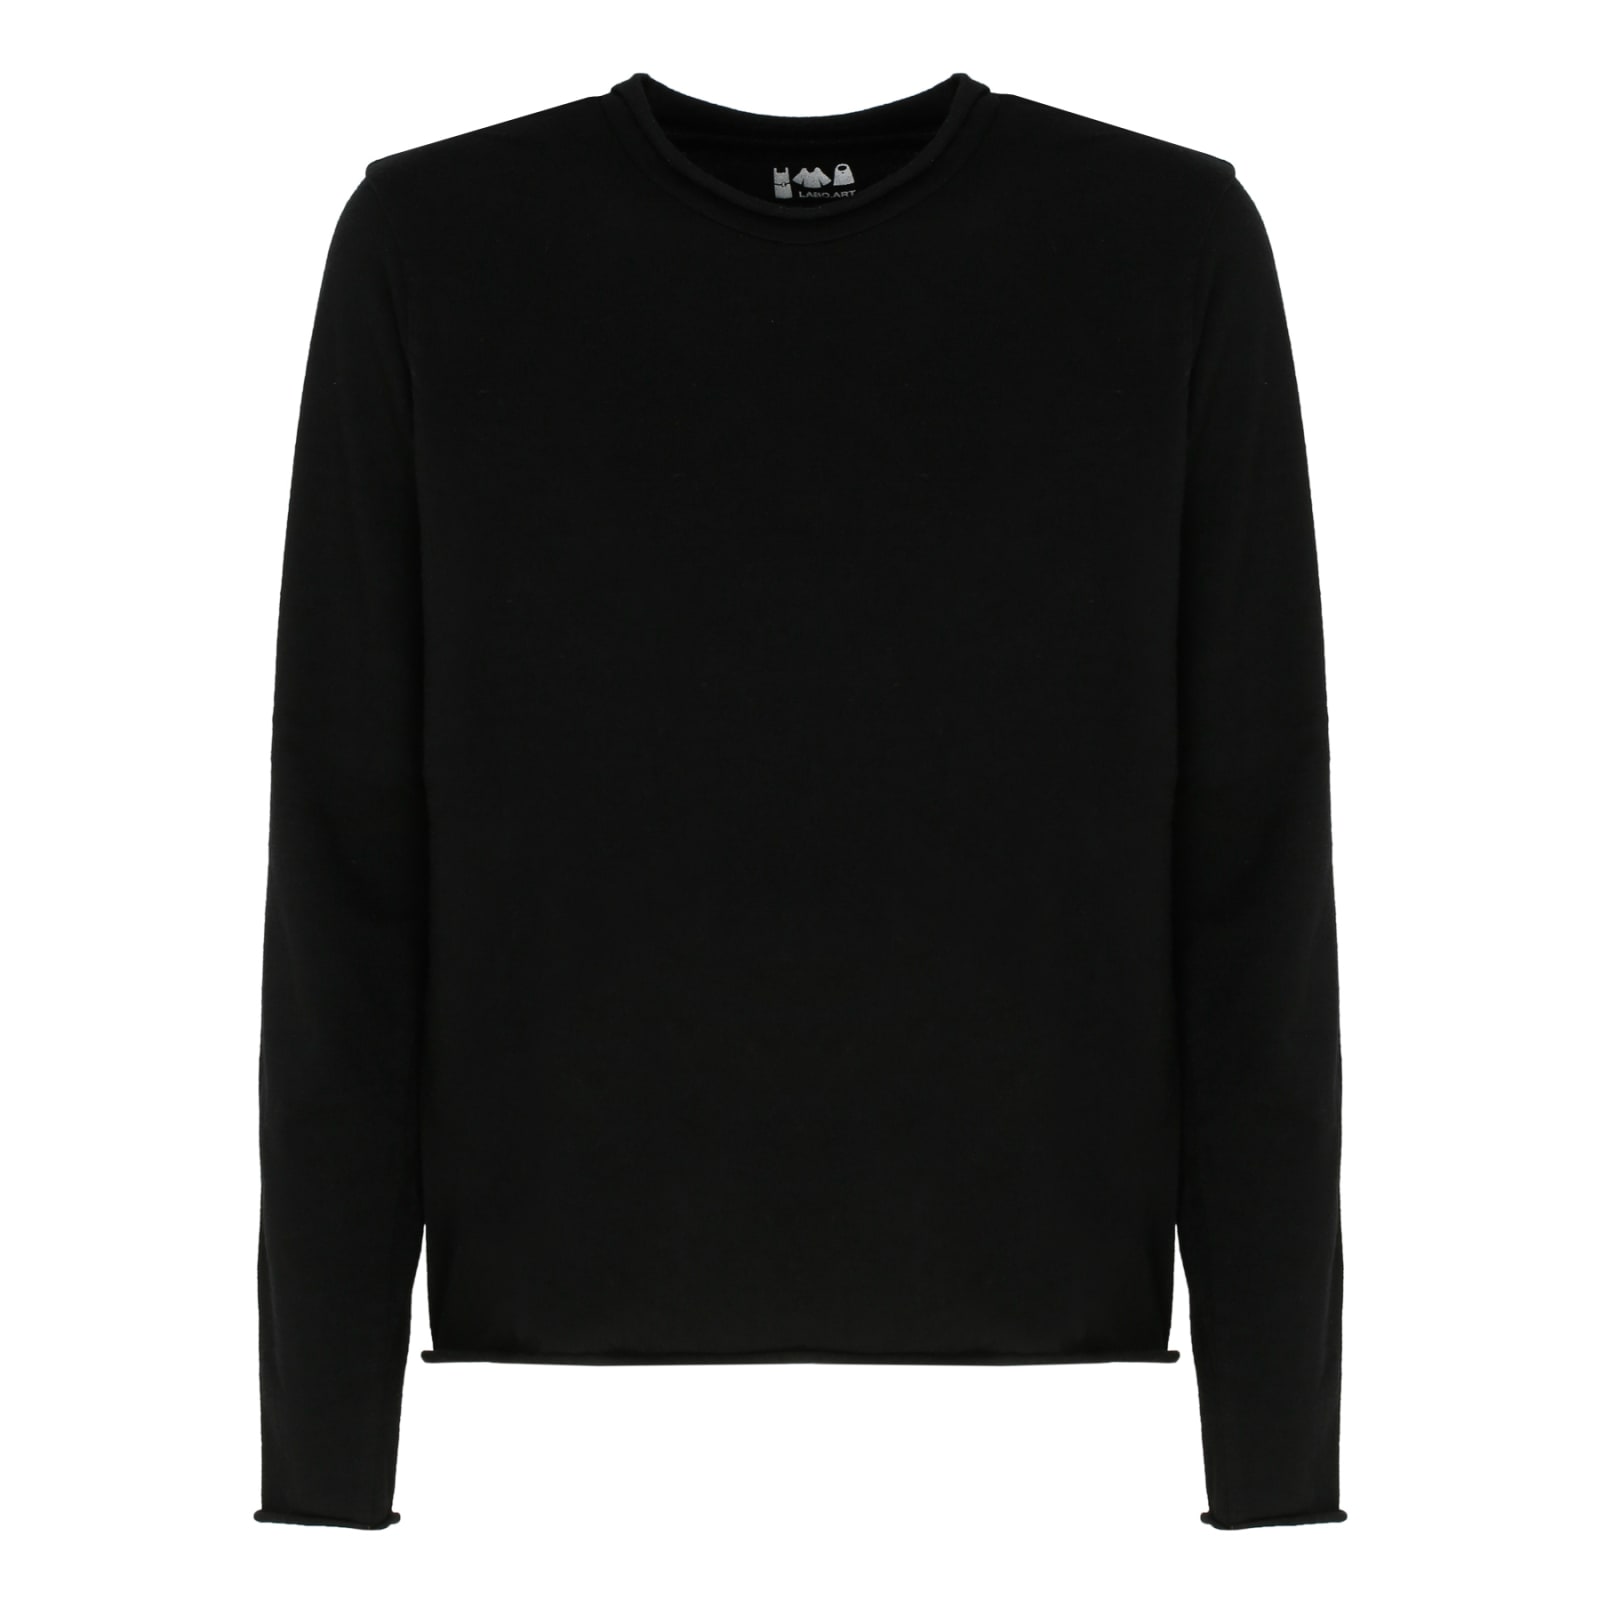 Labo. Art Black Wool Sweater